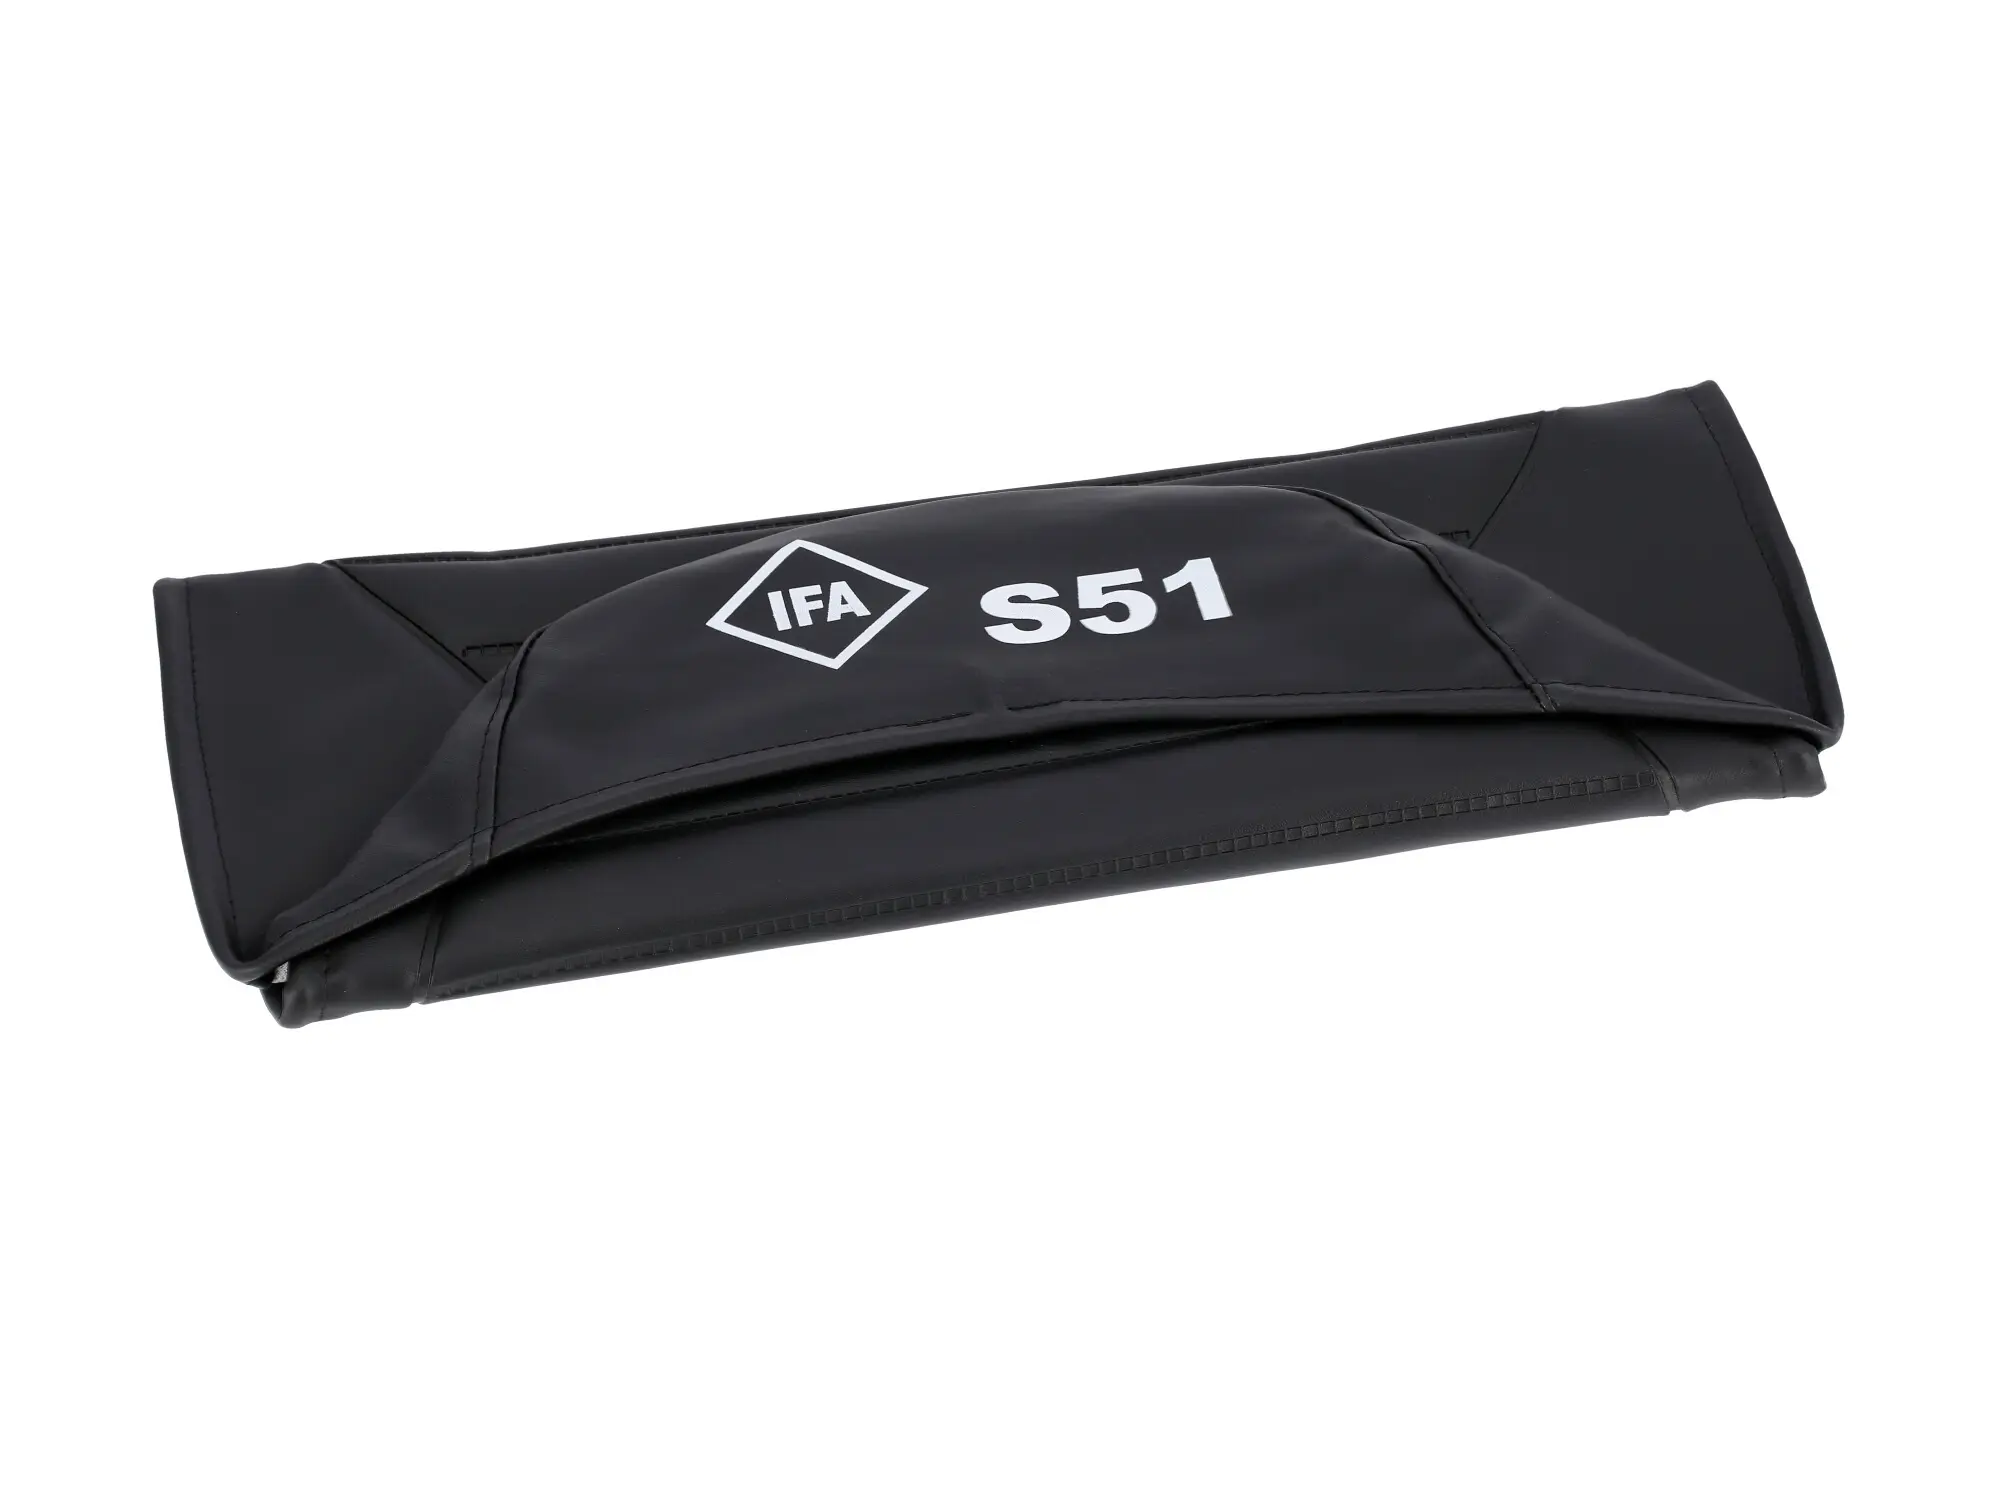 Sitzbezug strukturiert, schwarz mit "IFA S51"-Schriftzug - für Simson S51, Art.-Nr.: 10055115 - Bild 1